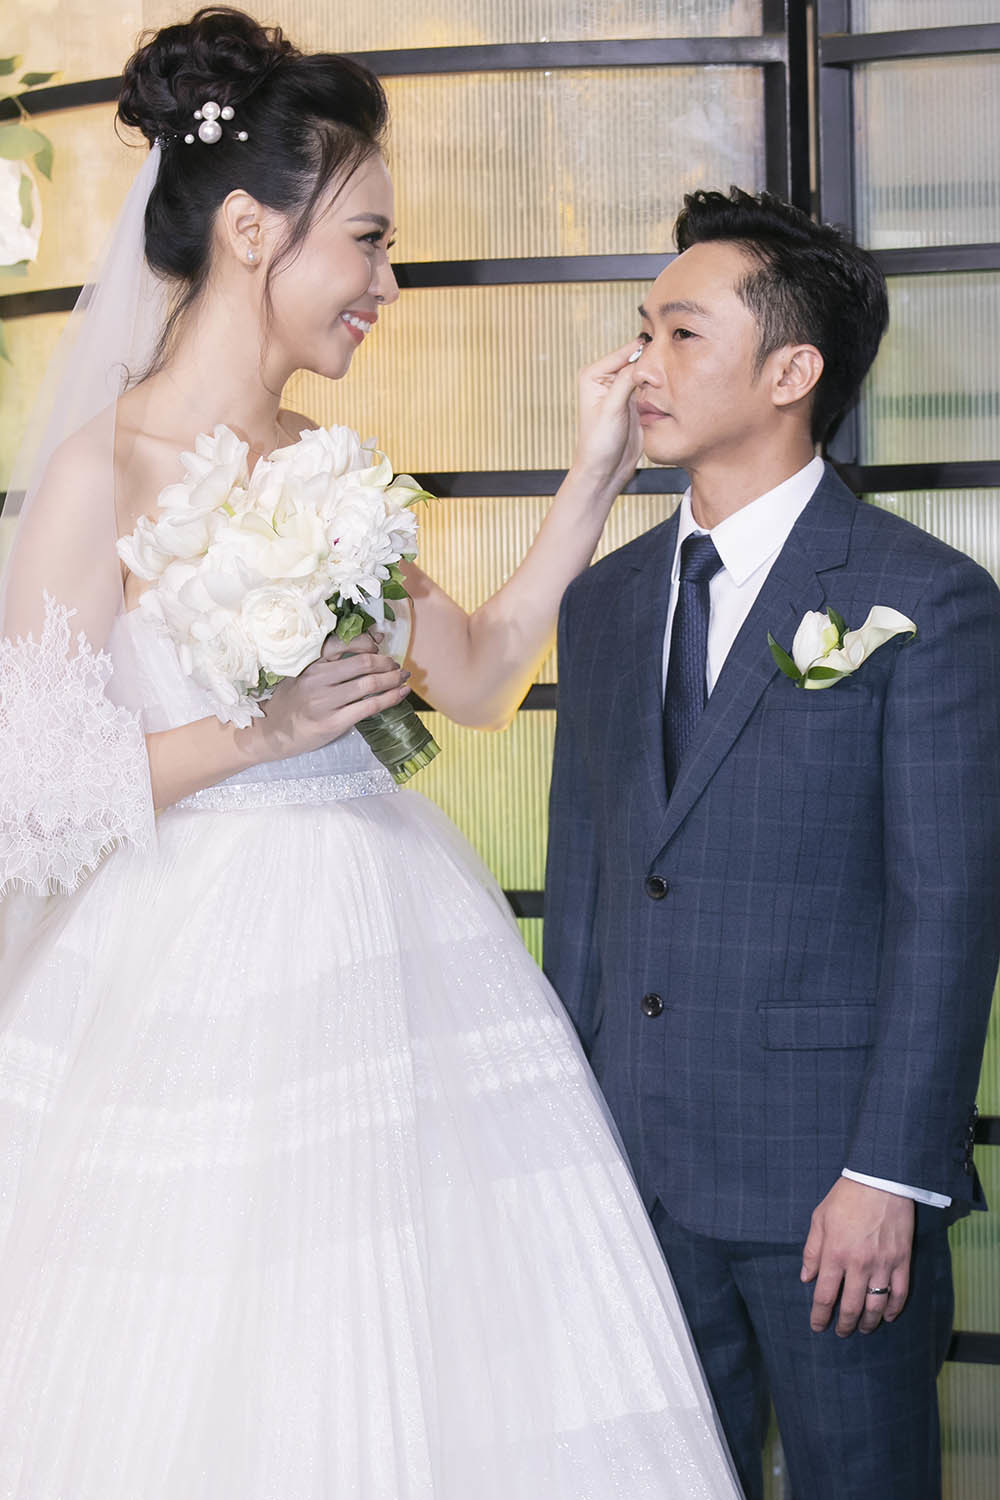  
Đàm Thu Trang cũng xuất hiện với 3 mẫu váy cưới trong hôn lễ cưới với Cường Đôla